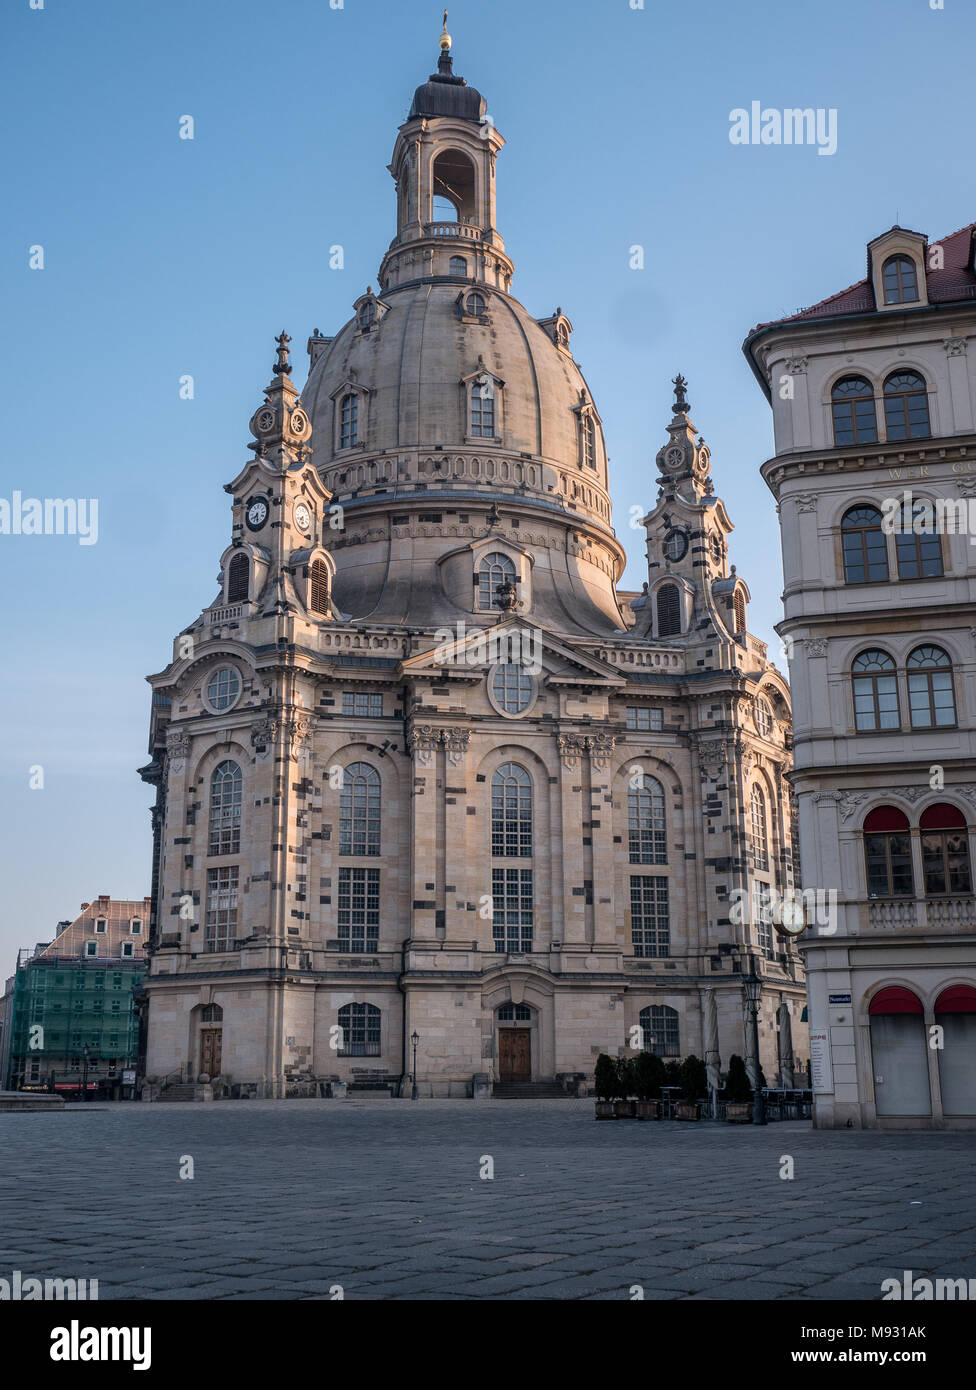 La iglesia de Nuestra Señora / Iglesia de Nuestra Señora (Frauenkirche) y estatua de Lutero en la madrugada, Dresde, Sajonia, Alemania Foto de stock